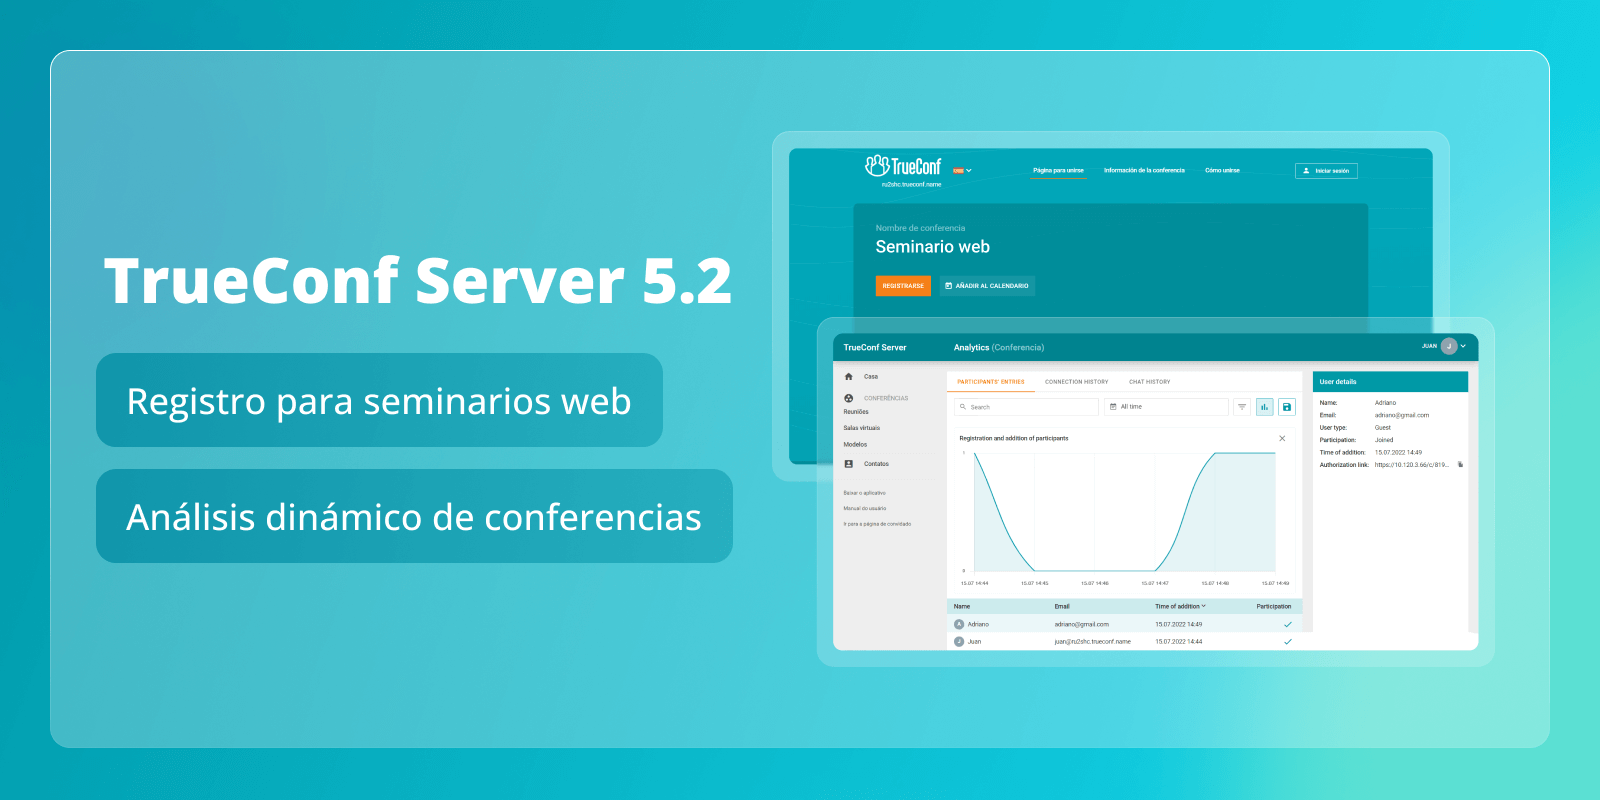 TrueConf Server 5.2: registro para seminarios web y análisis dinámico de la conferencia 6